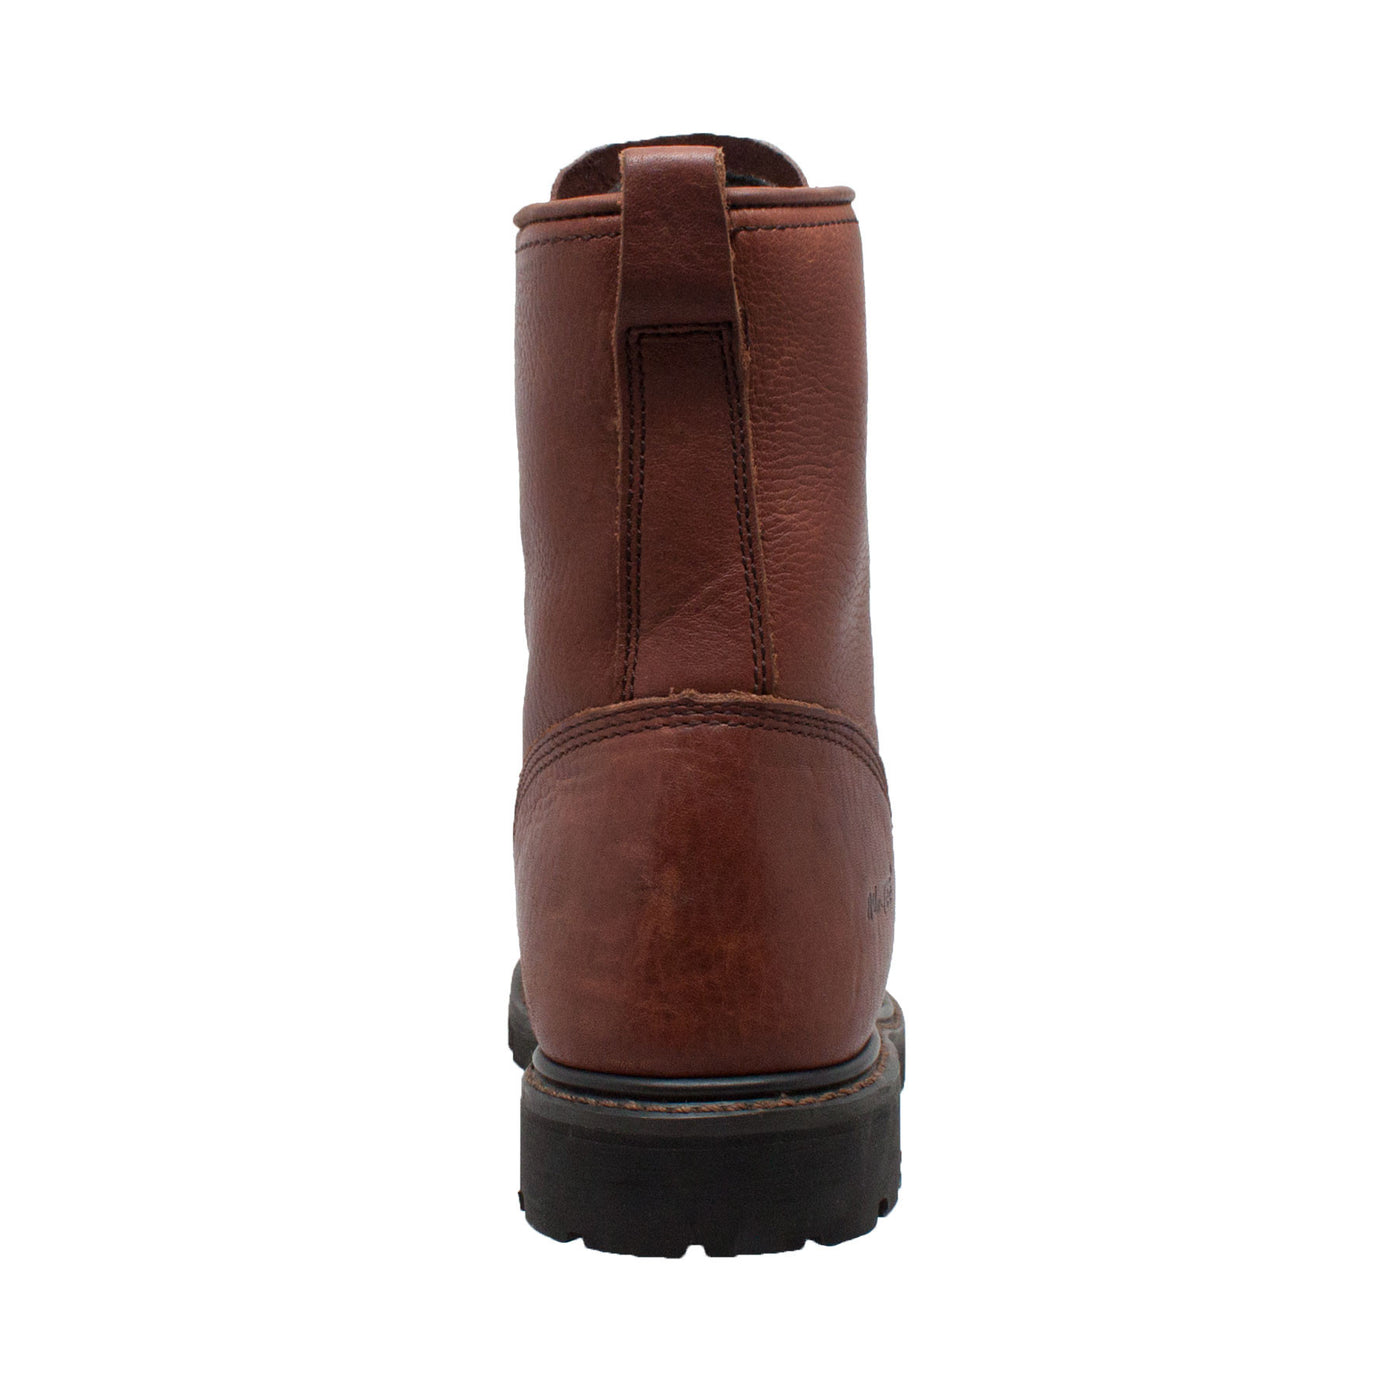 Men's 9" Chestnut Packer - 1180 - Shop Genuine Leather men & women's boots online | AdTecFootWear